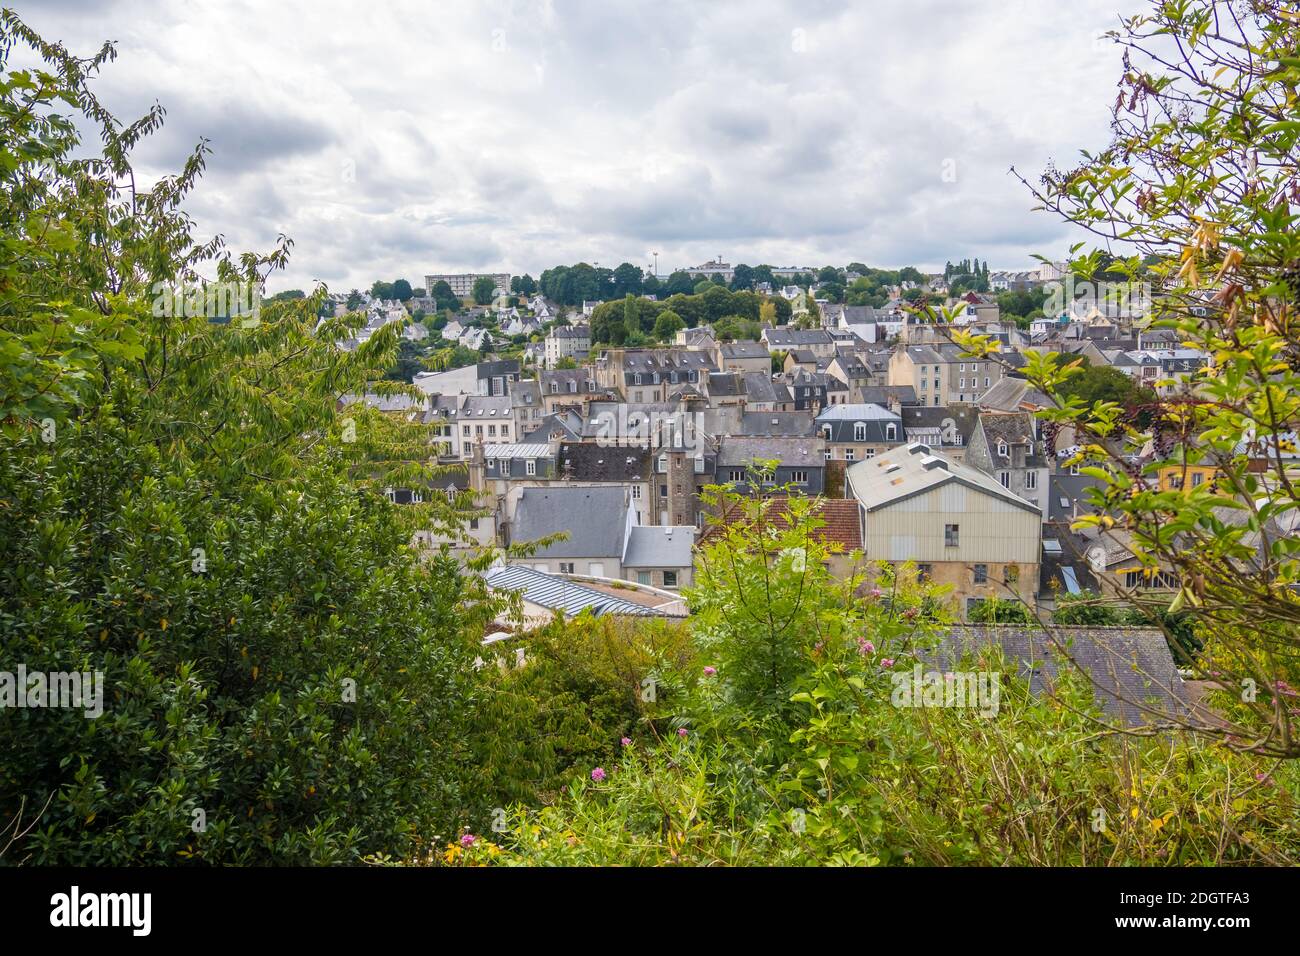 Morlaix, France - 28 août 2019 : rue du centre historique de Morlaix avec ses maisons colorées à colombages. Département de Finistère, Brittan Banque D'Images